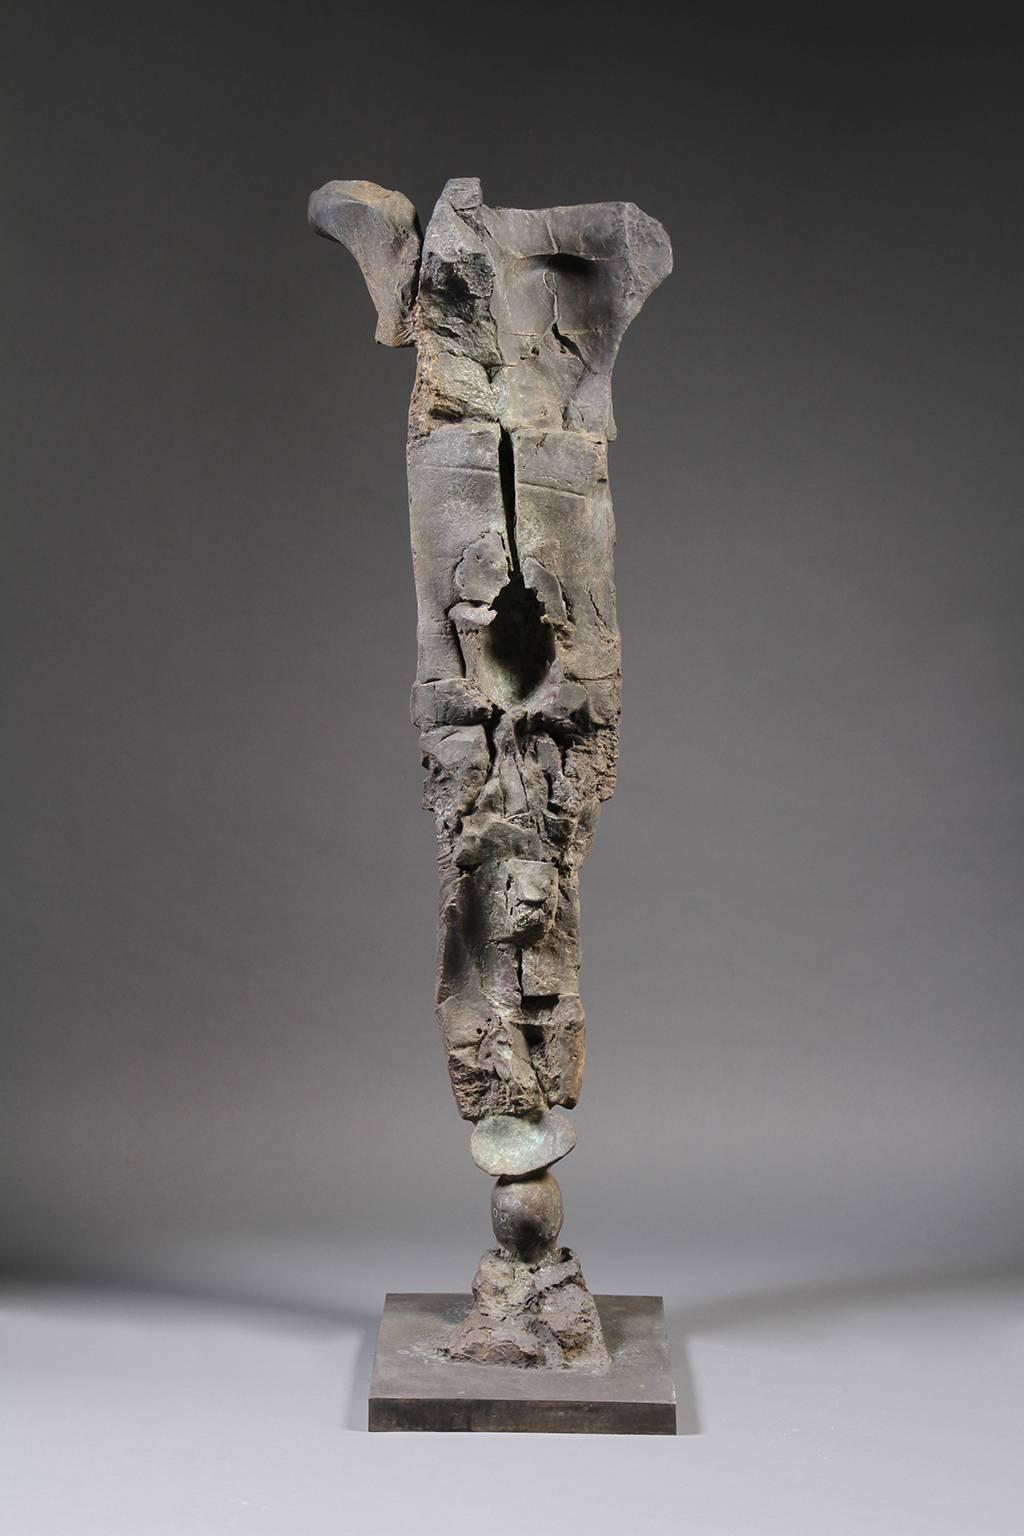 Stephen De Staebler Figurative Sculpture - Figure with Hollow Abdomen, Ed. 1/4